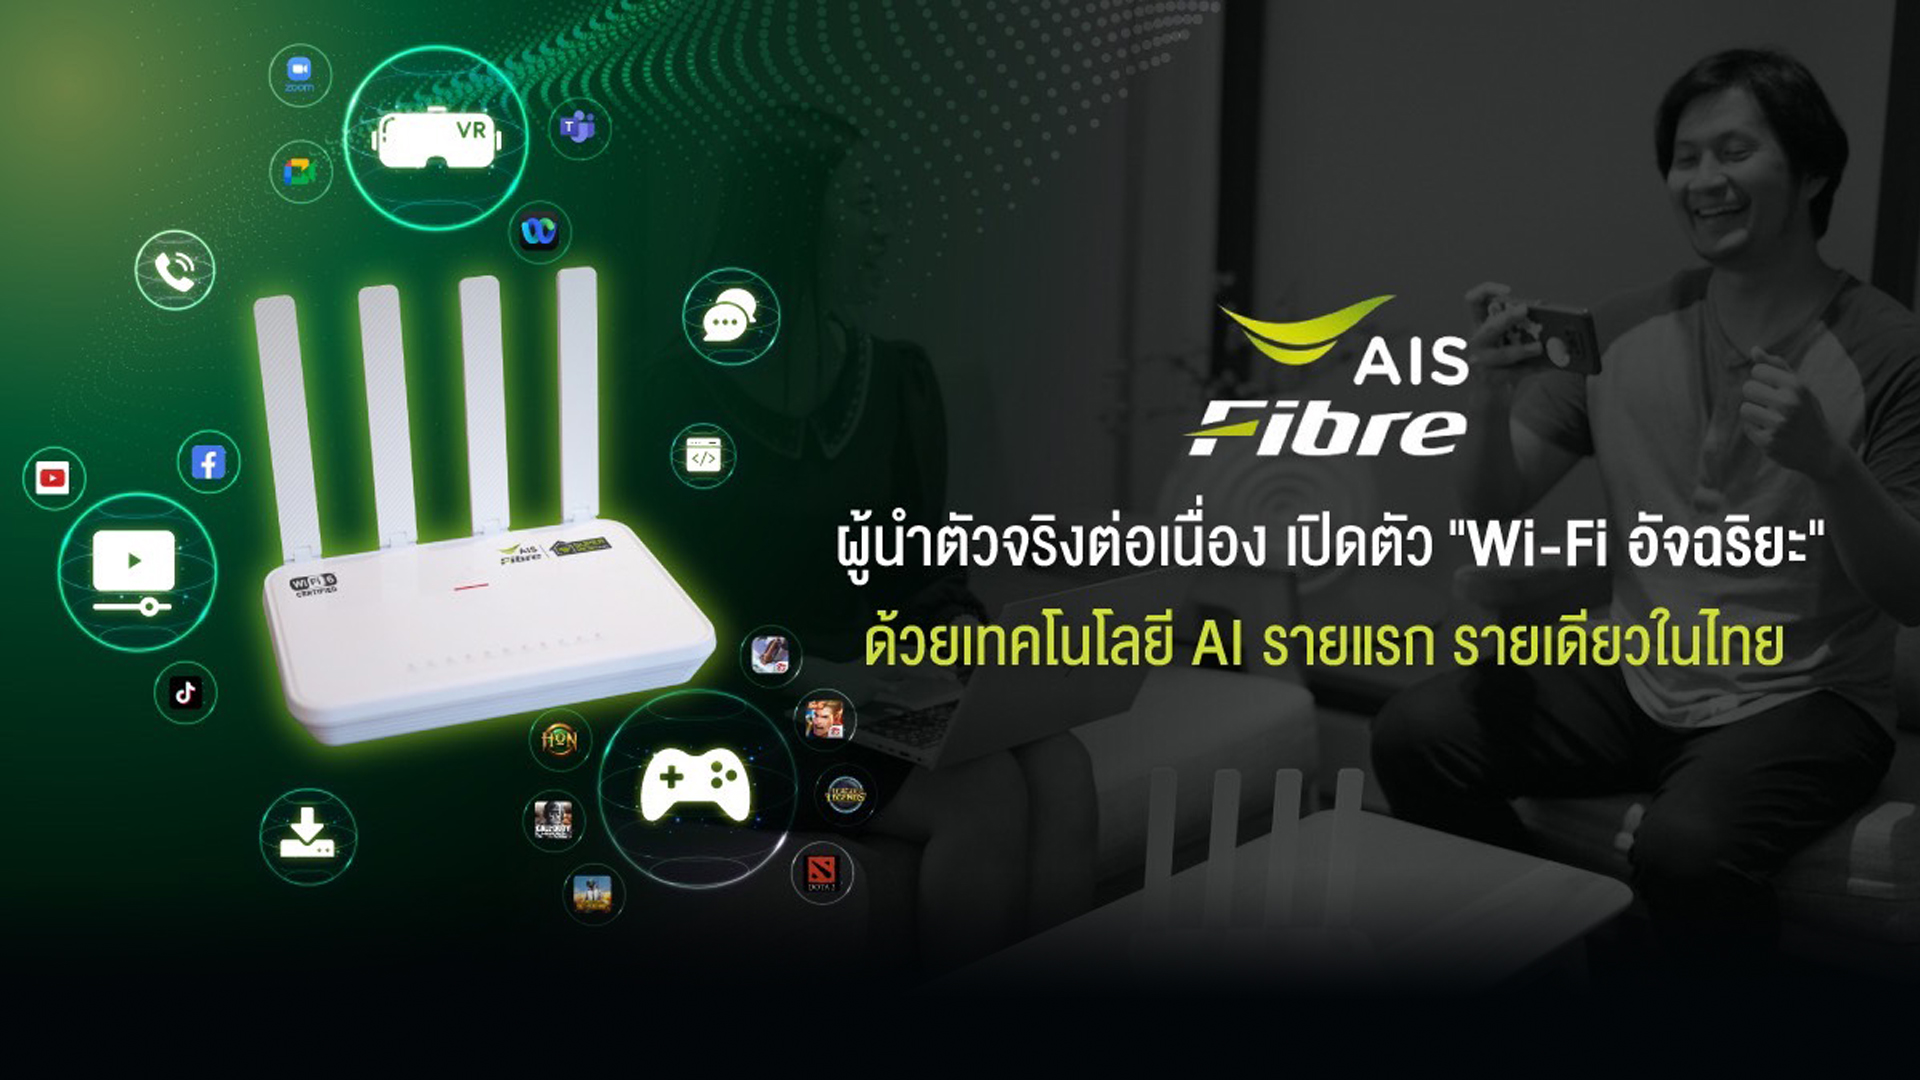 AIS Fibre ยืนหนึ่งผู้นำตัวจริงต่อเนื่อง เปิดตัว “Wi-Fi อัจฉริยะ” รายแรก รายเดียวในไทย